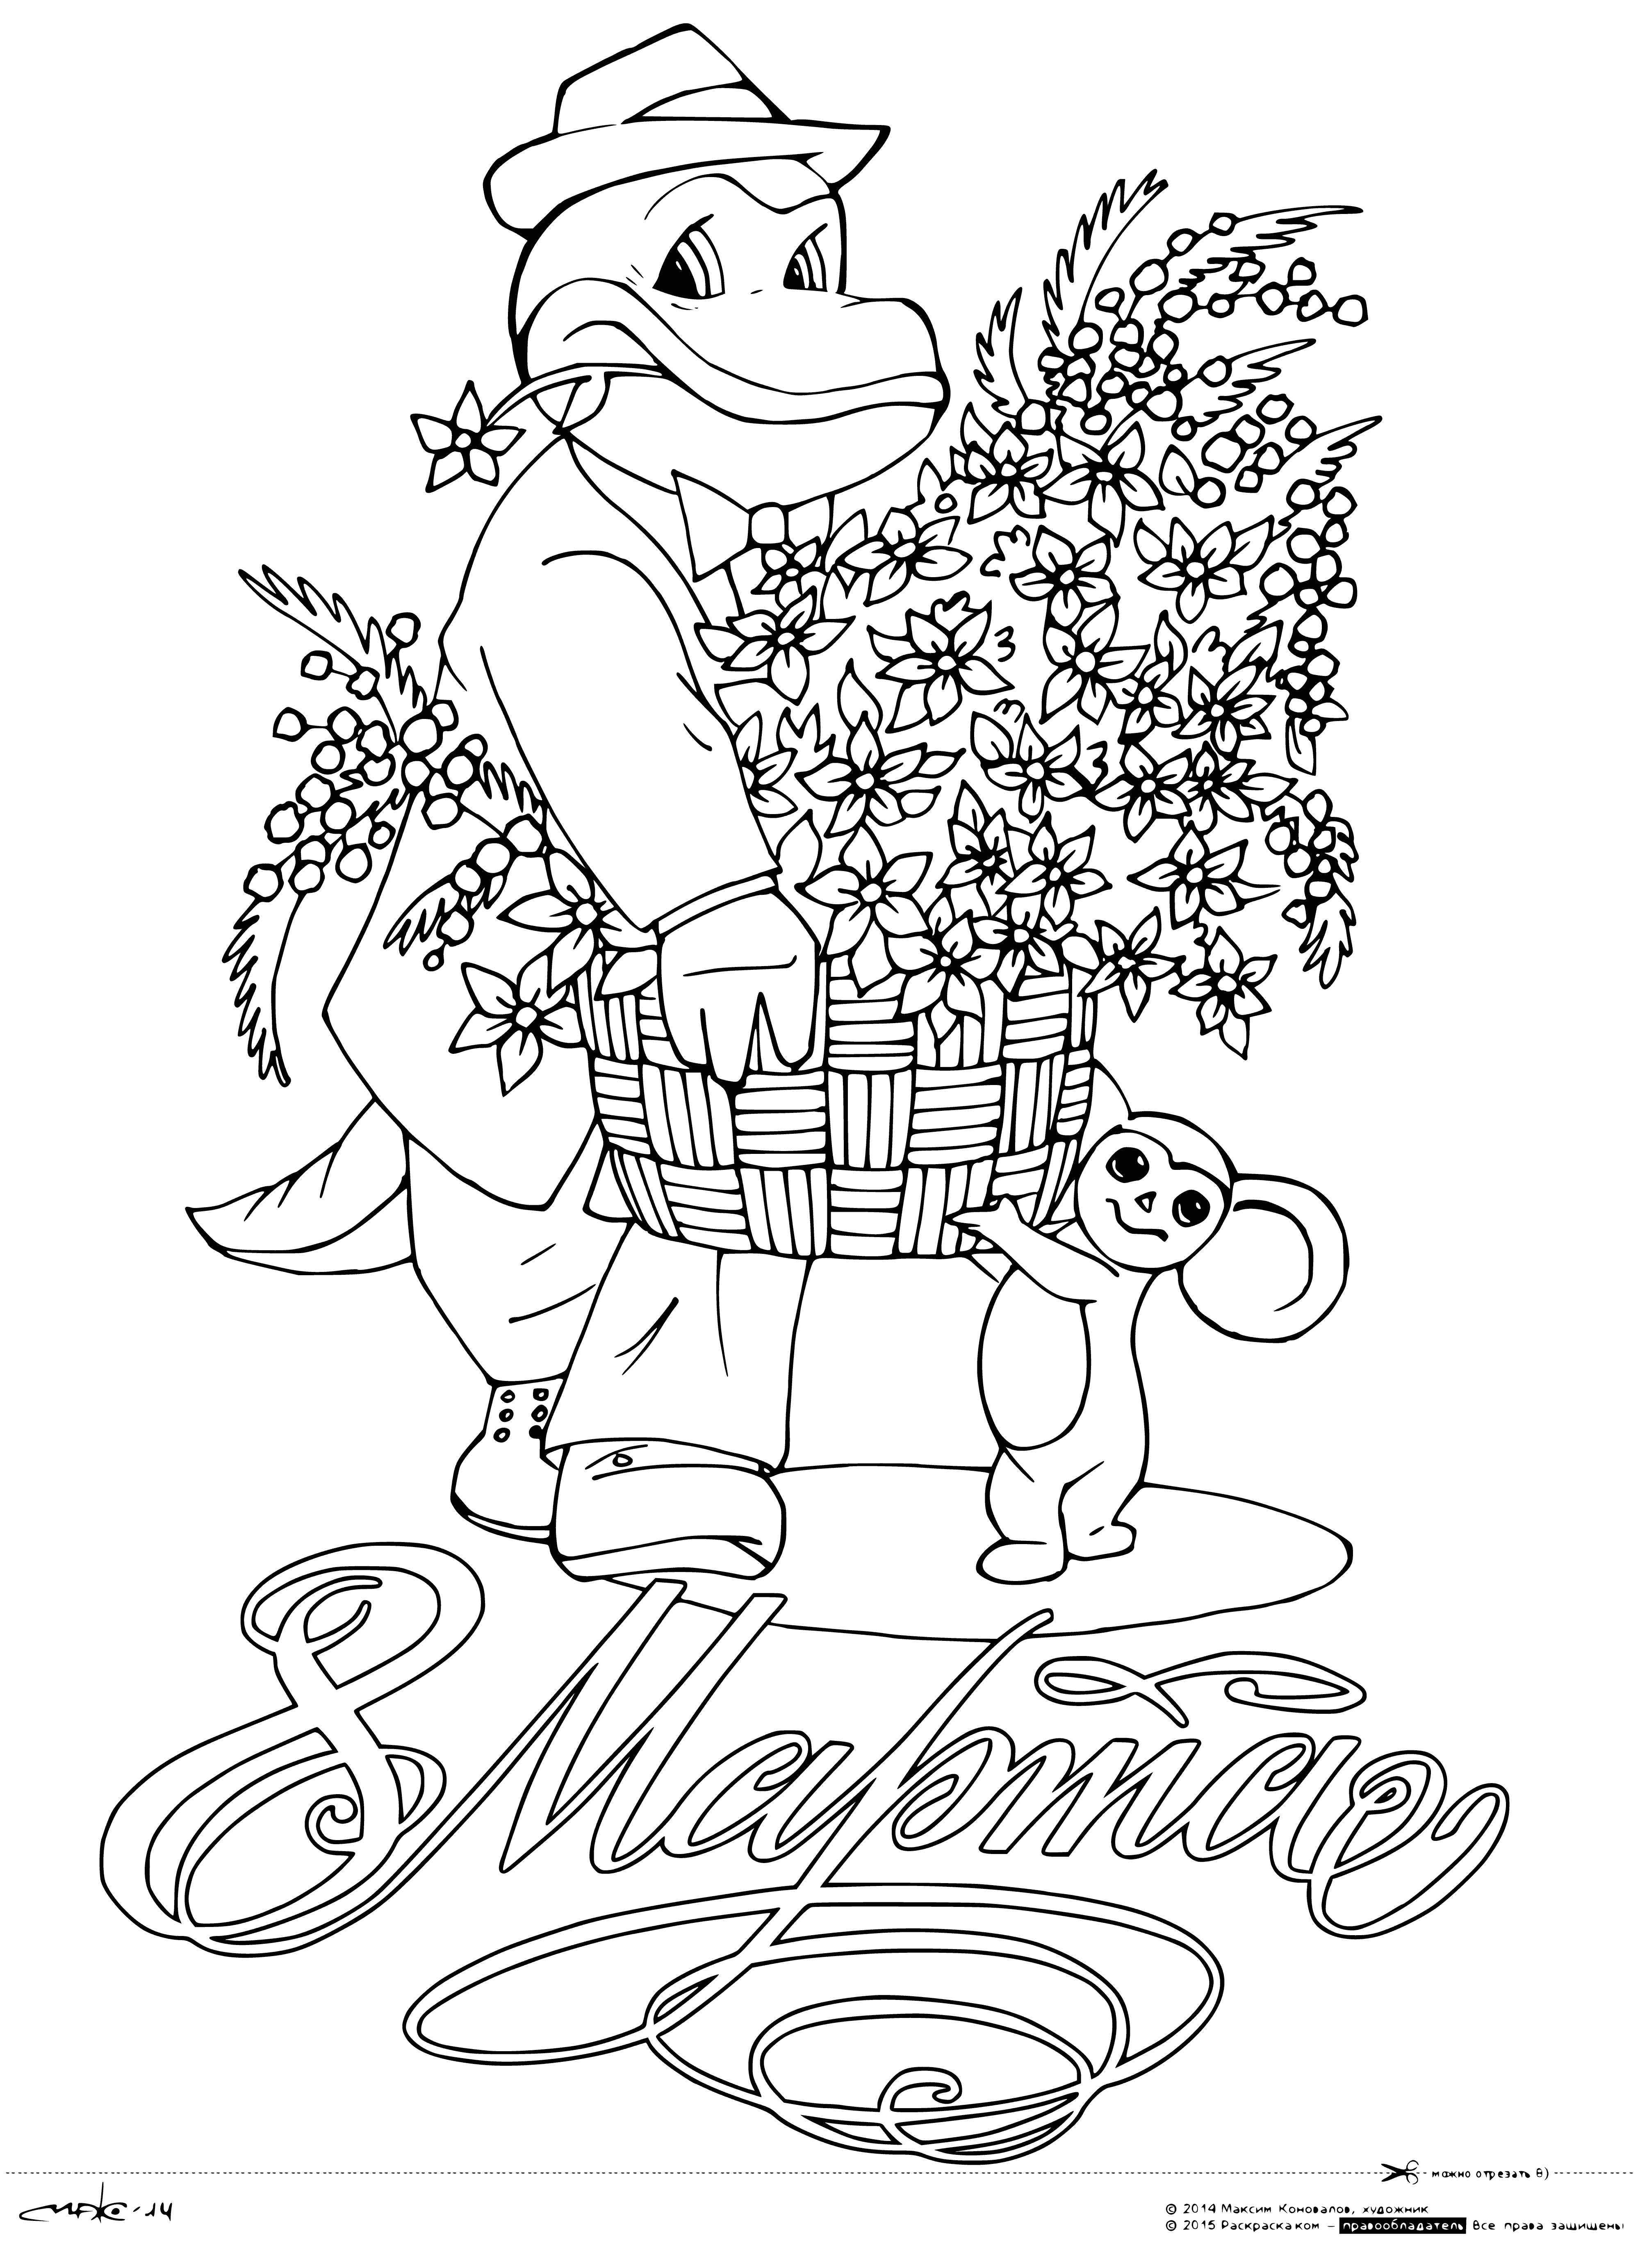 Gena und Cheburashka mit einem Blumenkorb Malseite